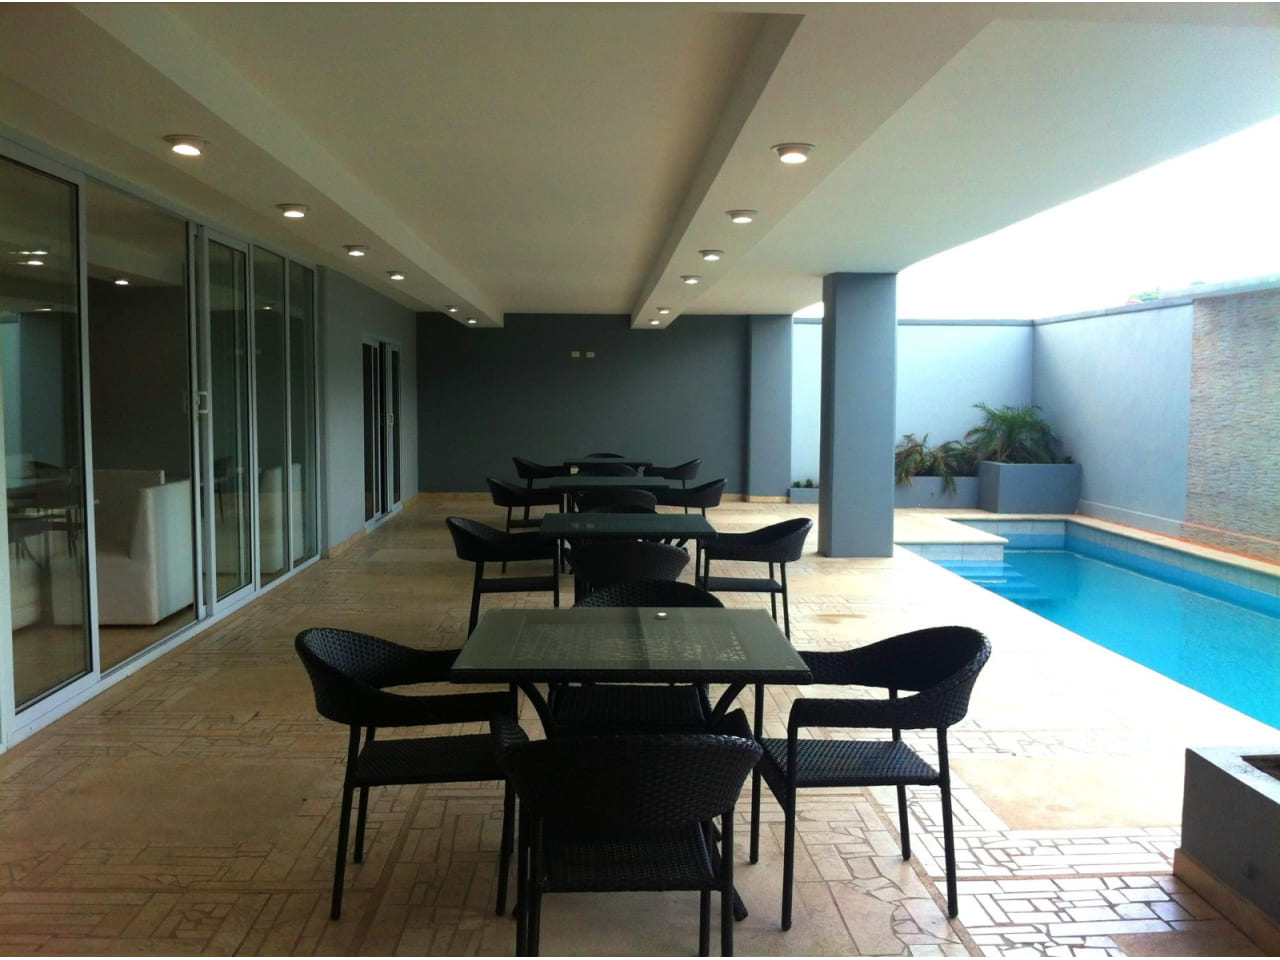 Área de piscina con diferentes mesas y sillas para disfrutar del ambiente refrescante de la piscina., paredes de color gris oscuro, suelo antideslizante de color café claro.